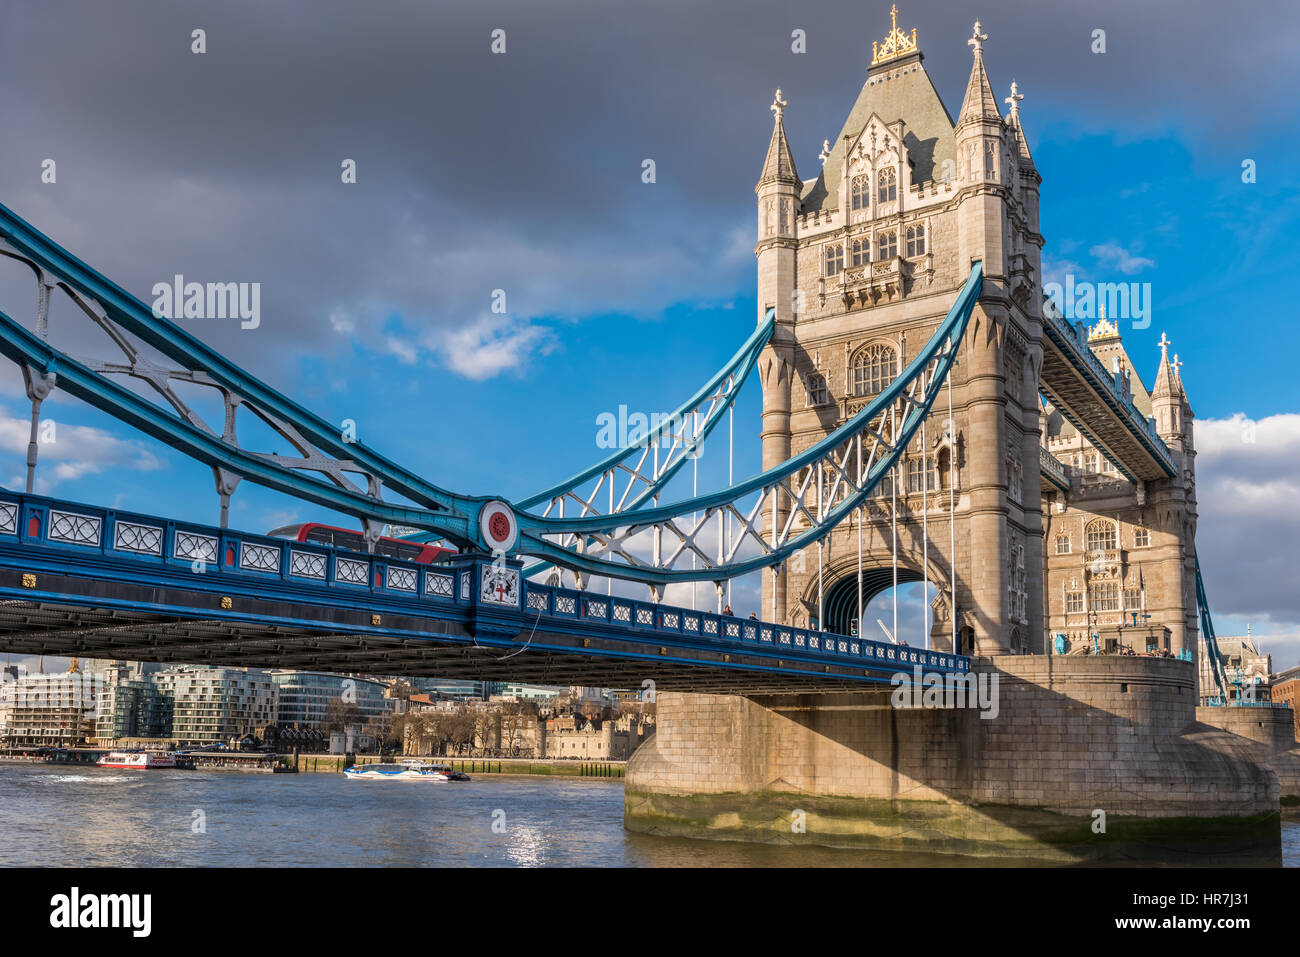 L'emblématique Tower Bridge s'allume au soleil sur un ton calme mais froid à la capitale de Londres. Banque D'Images